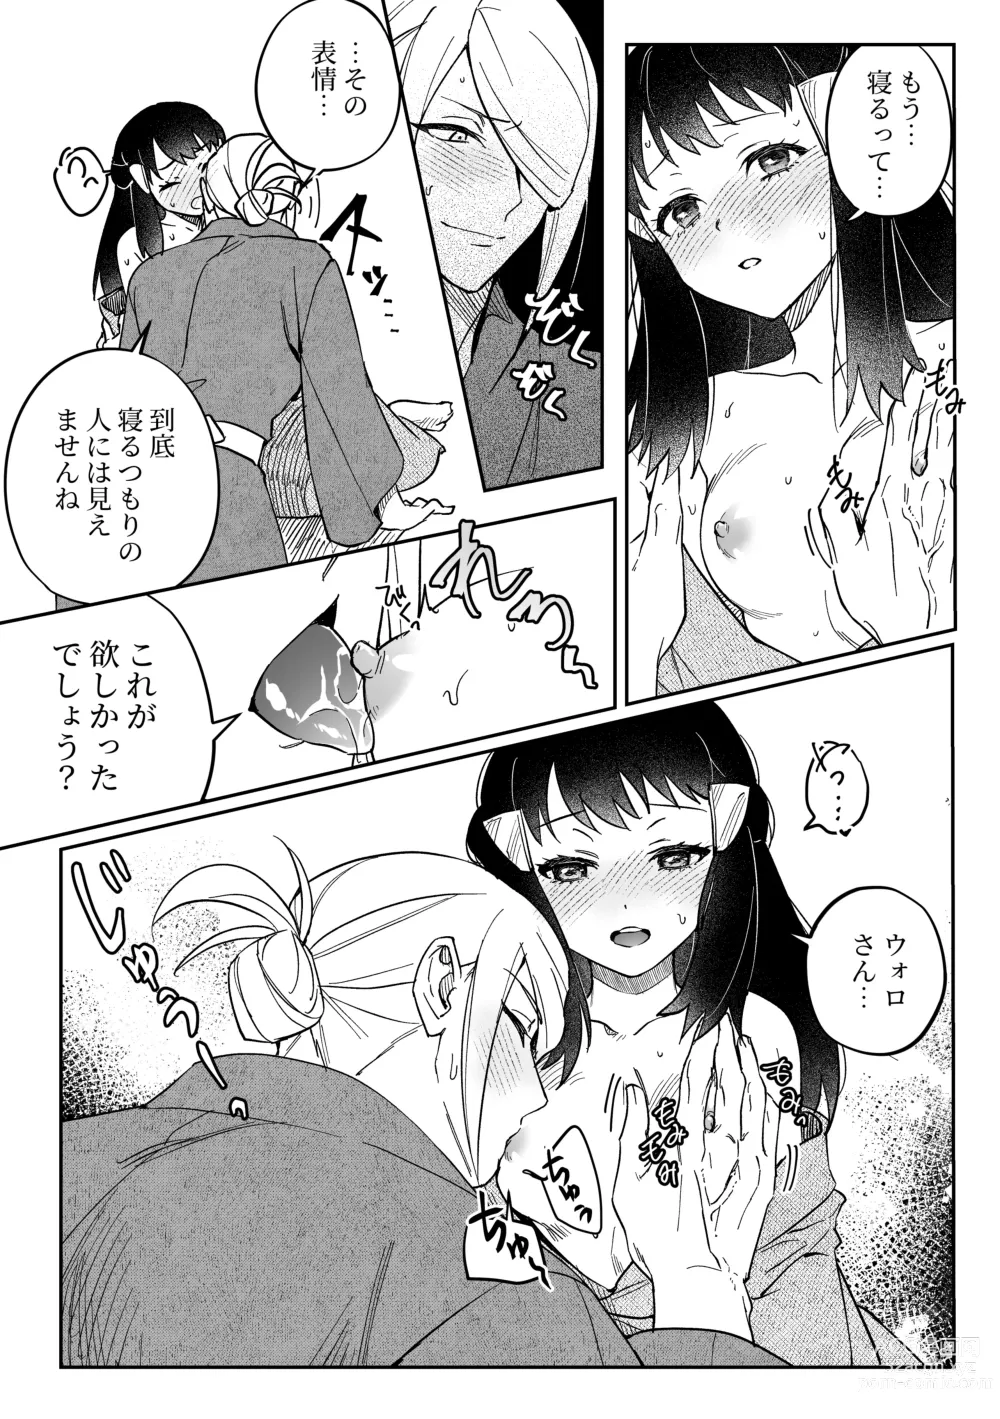 Page 5 of doujinshi Chikubi Karakau Volo Shou Manga